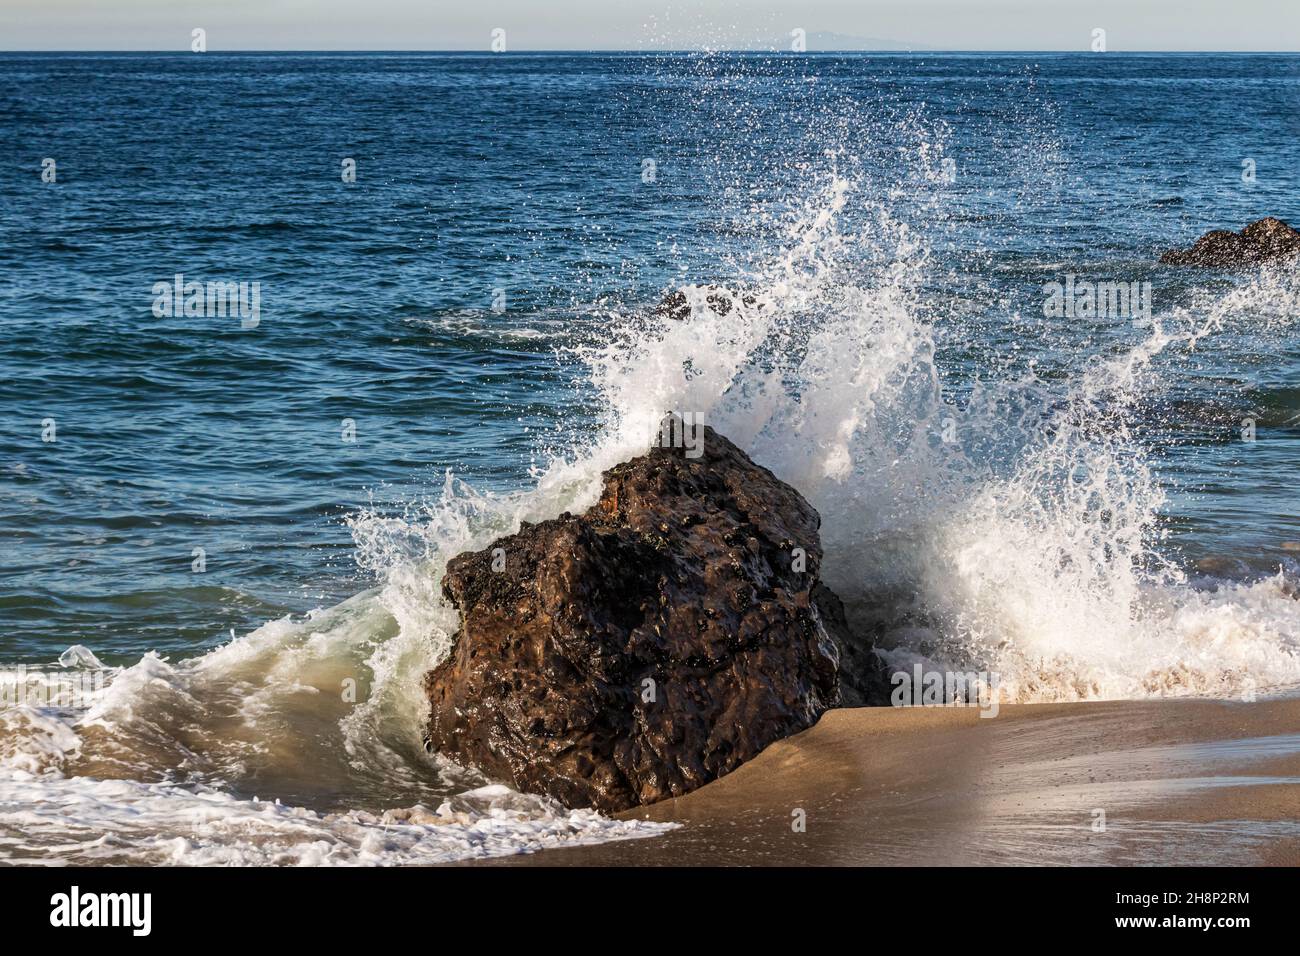 Onde che si schiantano sulla roccia alla spiaggia di Malibu, California. Bagnate la sabbia marrone in primo piano, spruzzate nell'aria. Oceano Pacifico sullo sfondo. Foto Stock